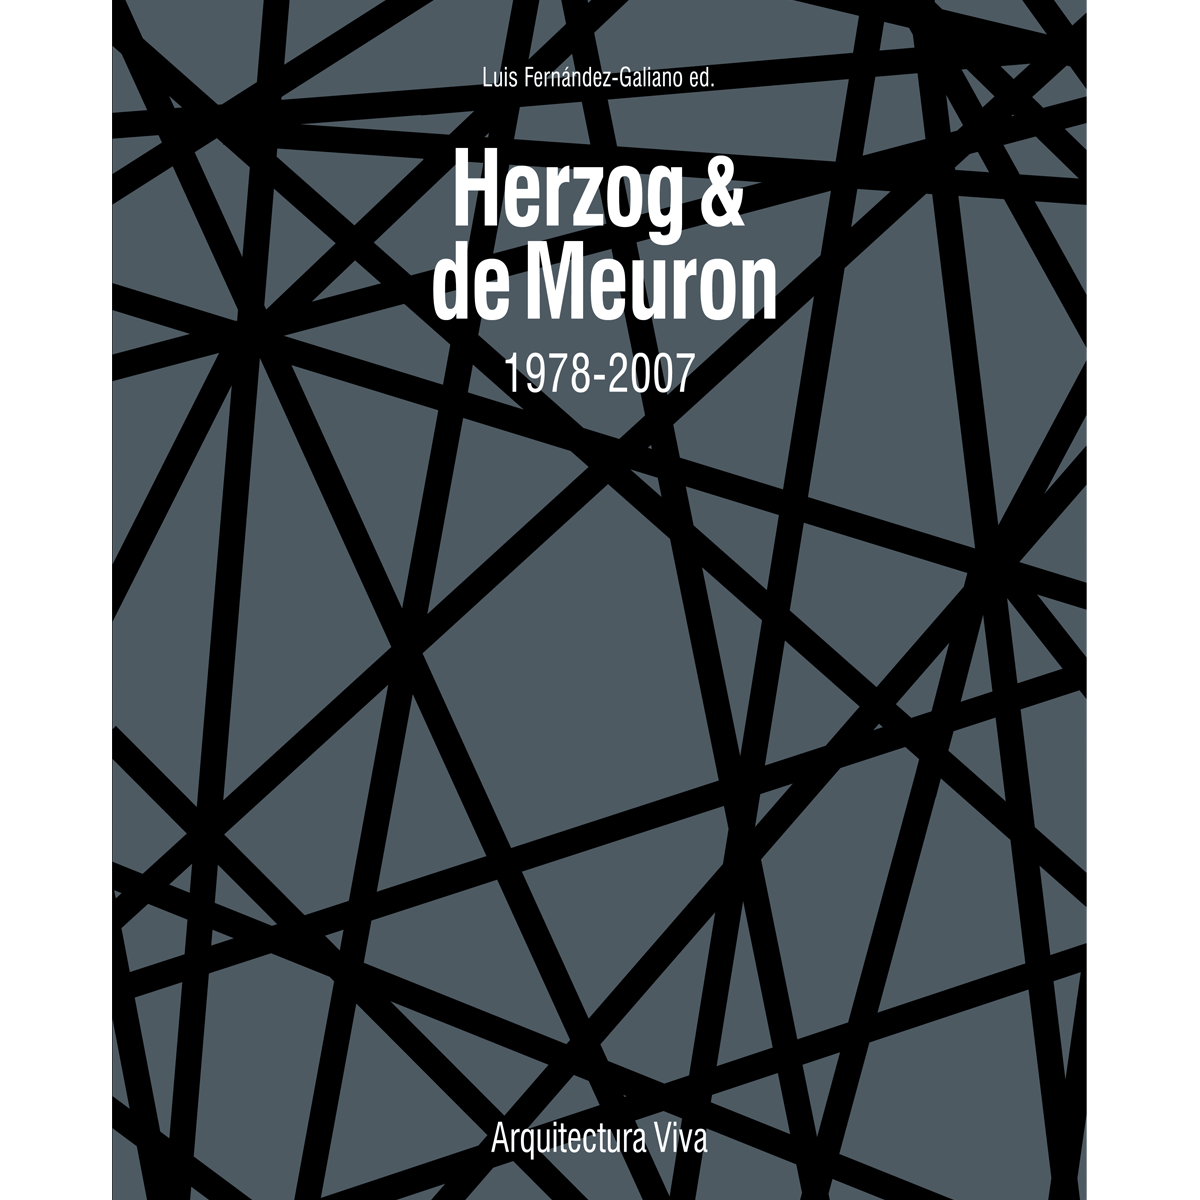 Herzog & de Meuron 1978-2007